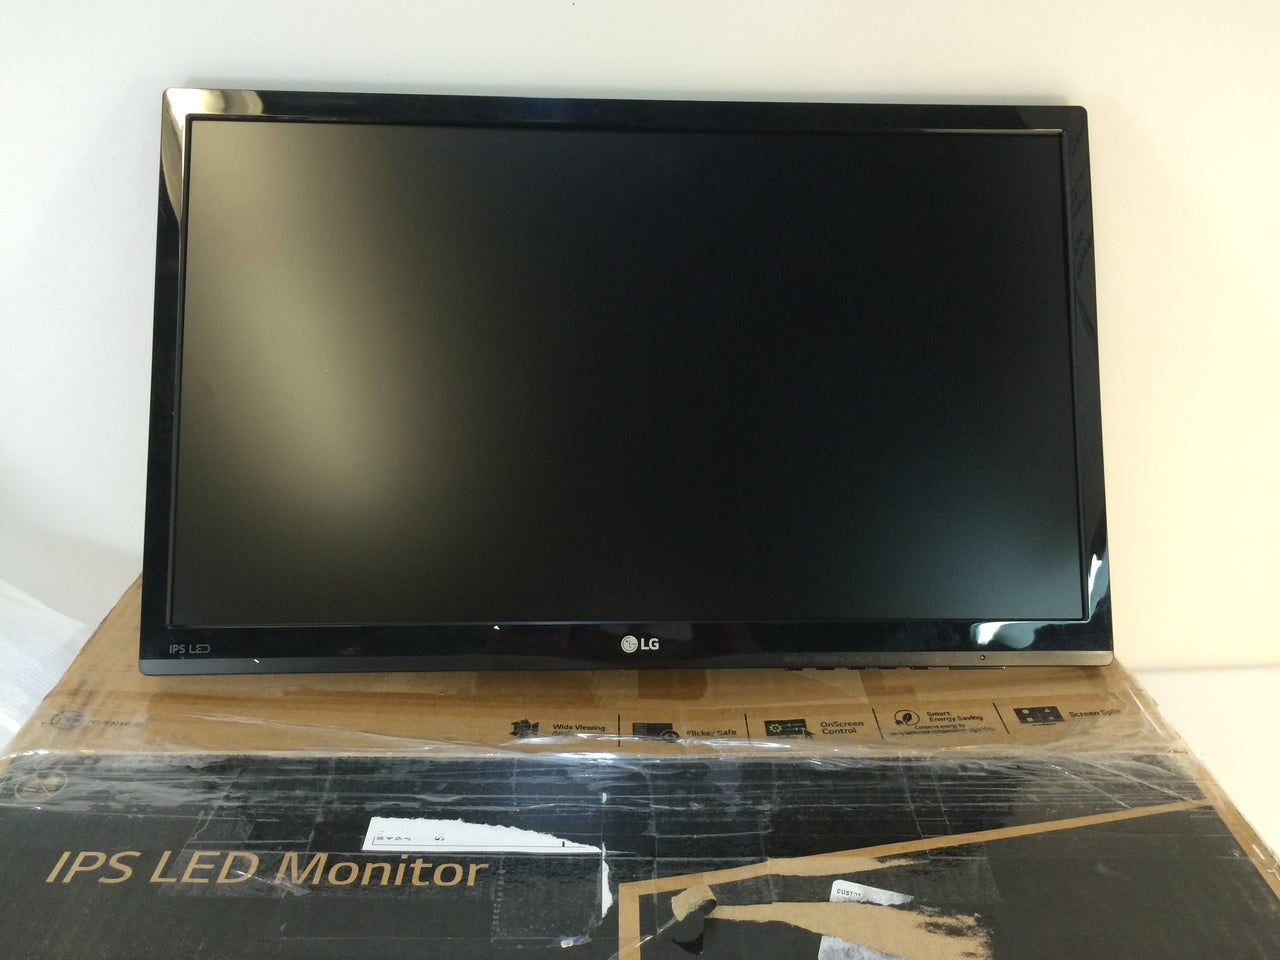 LG 22'' Full HD LED Monitor